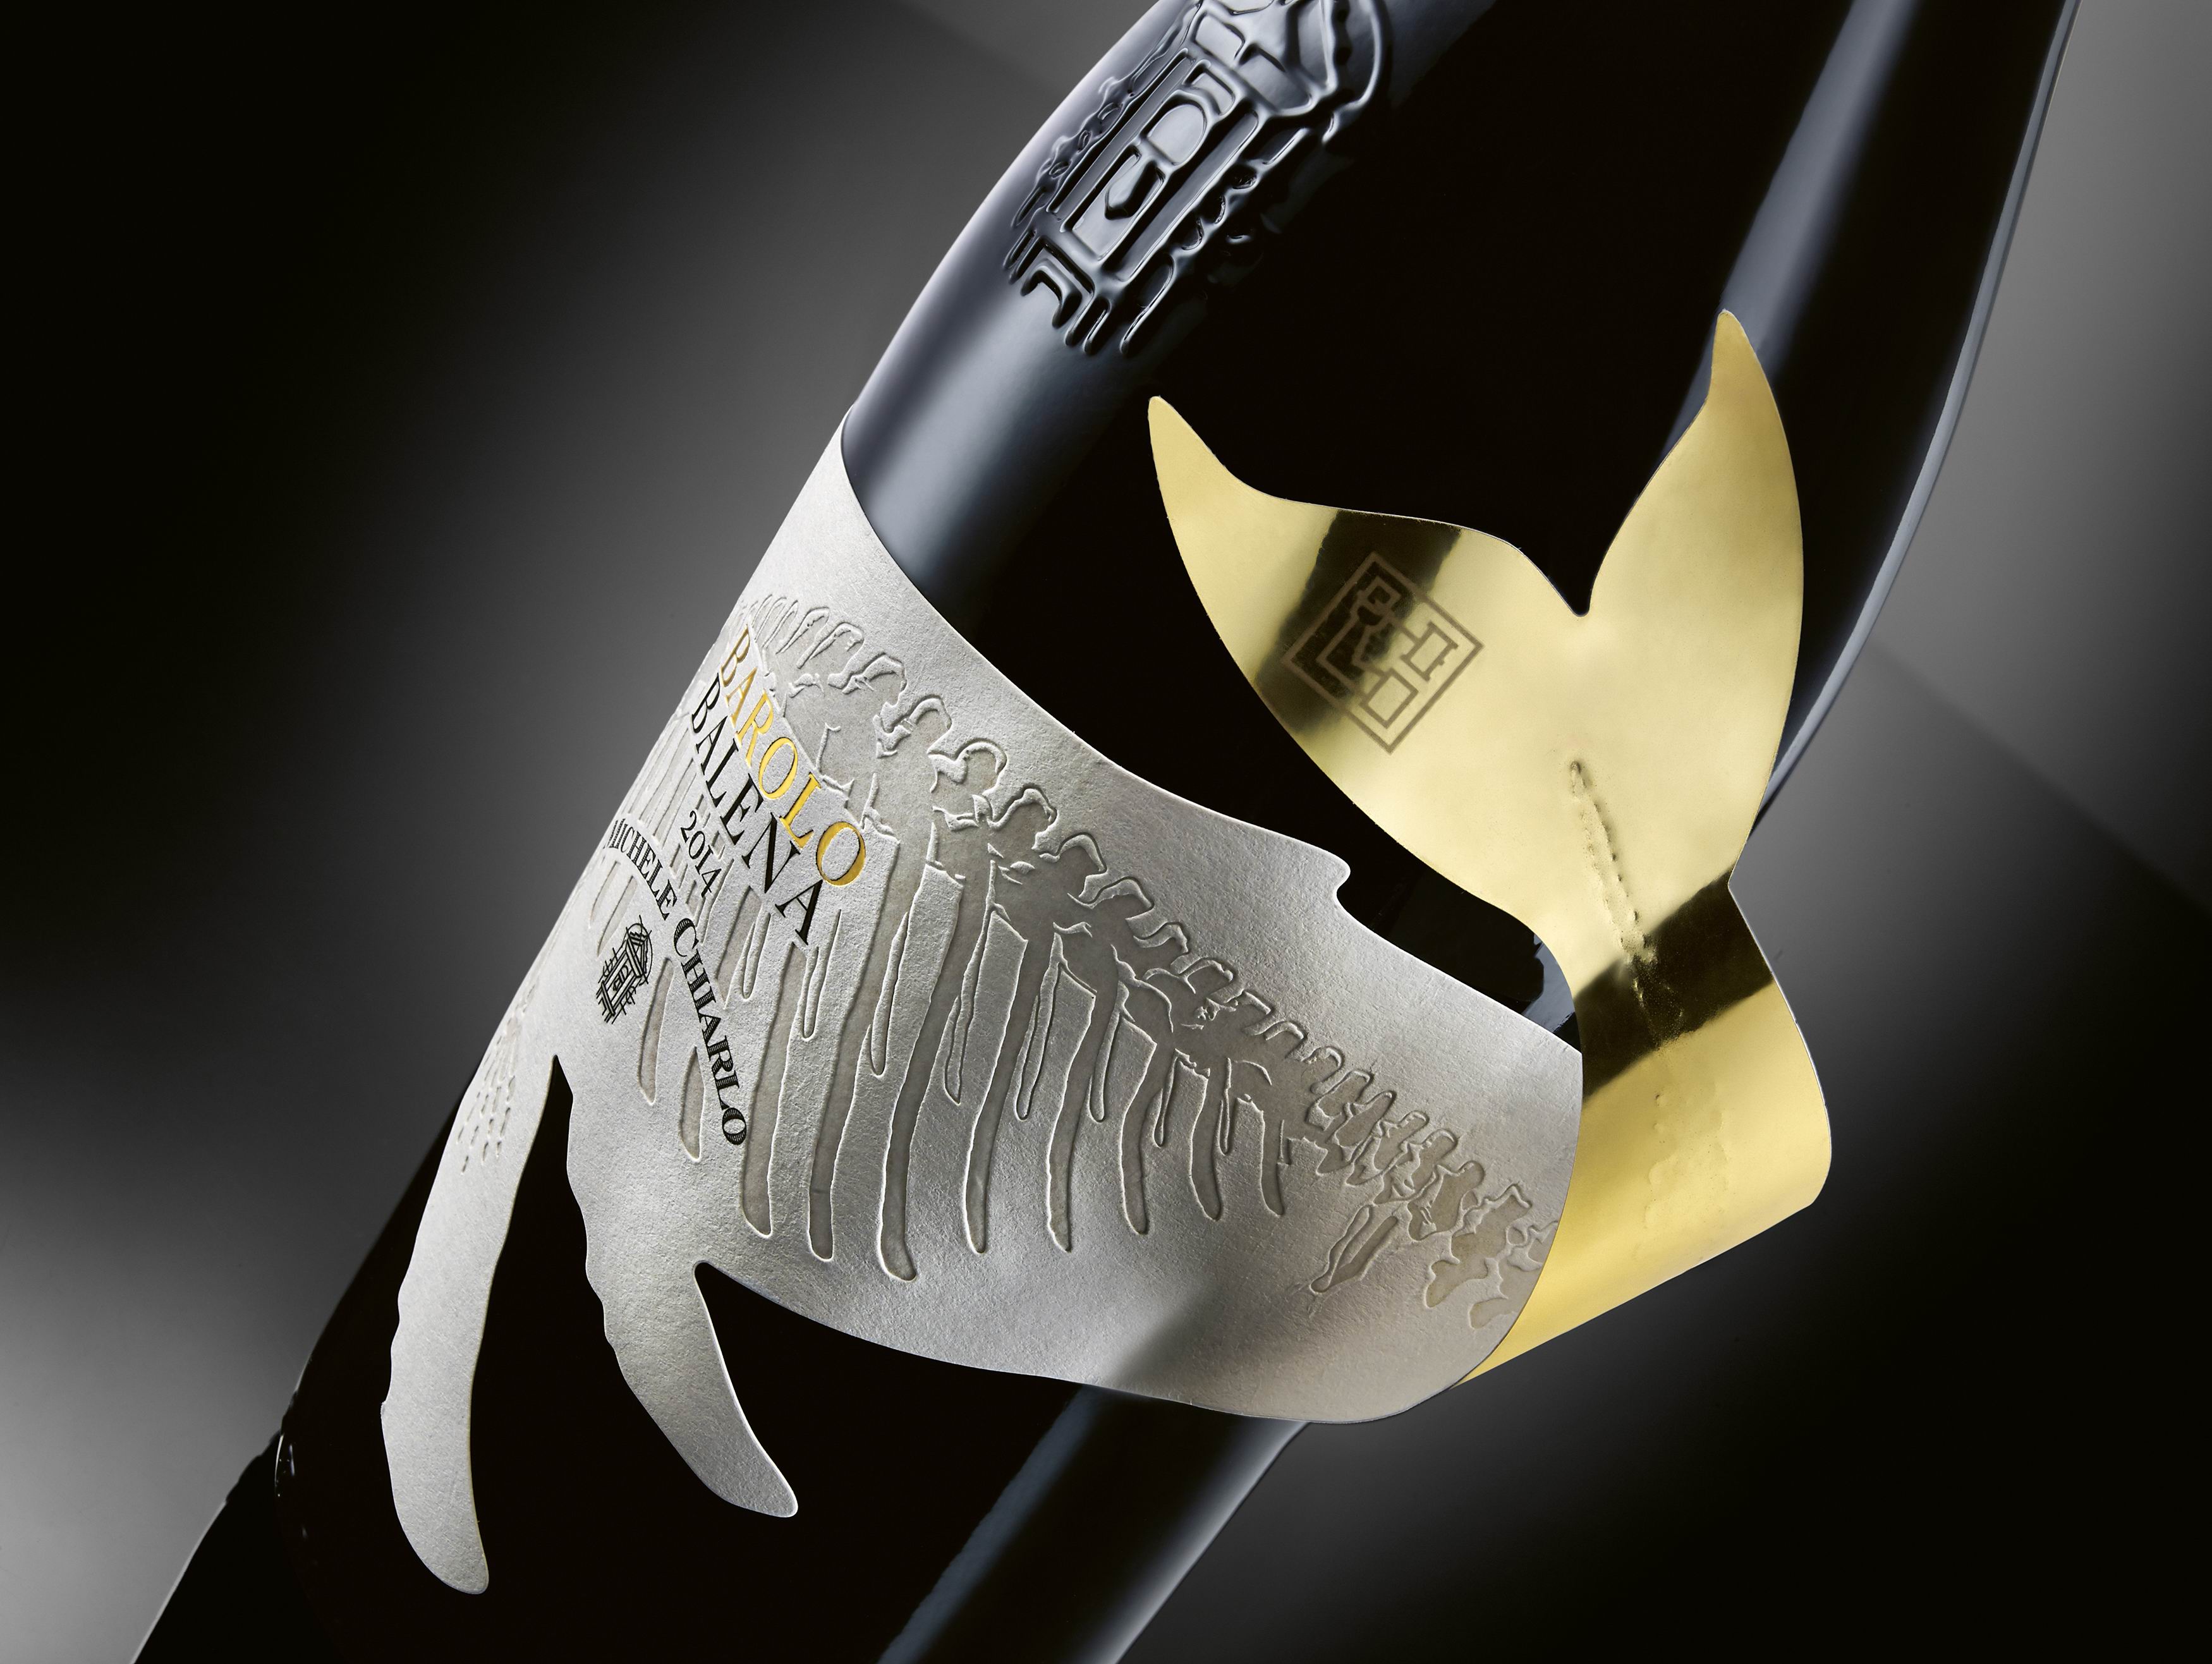 饮料包装设计  Barolo Balena葡萄酒包装设计  